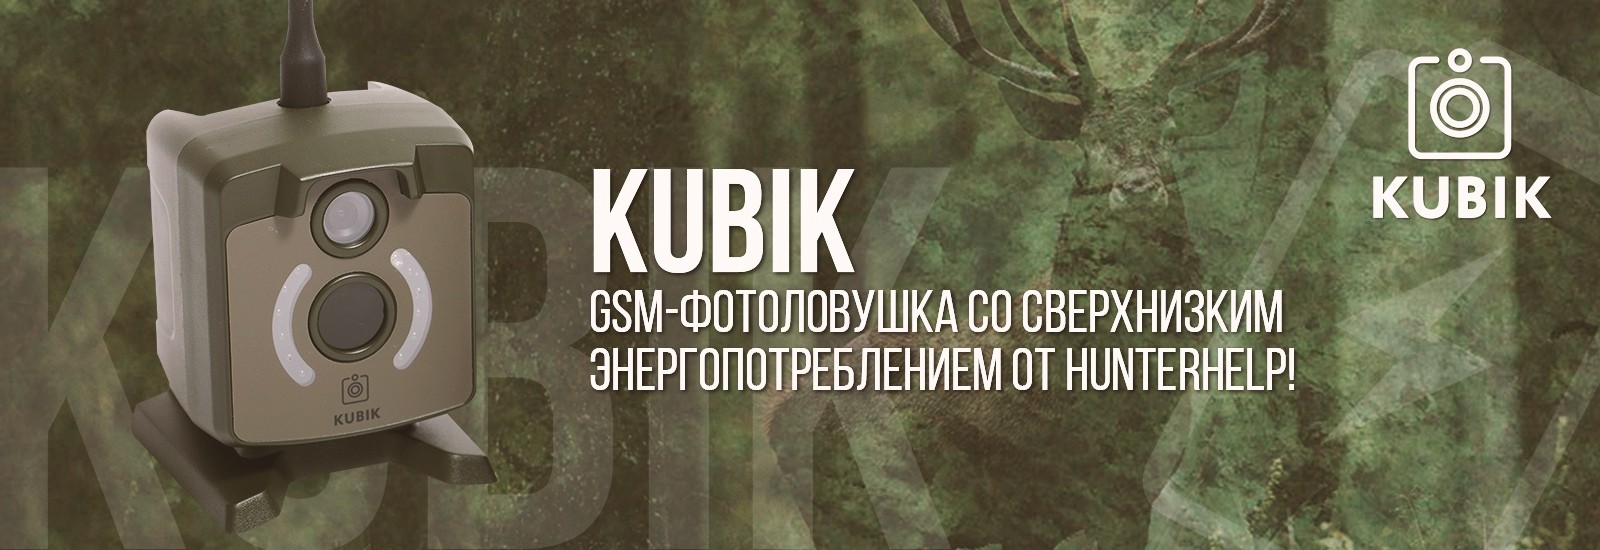 GSM фотоловушка KUBIK